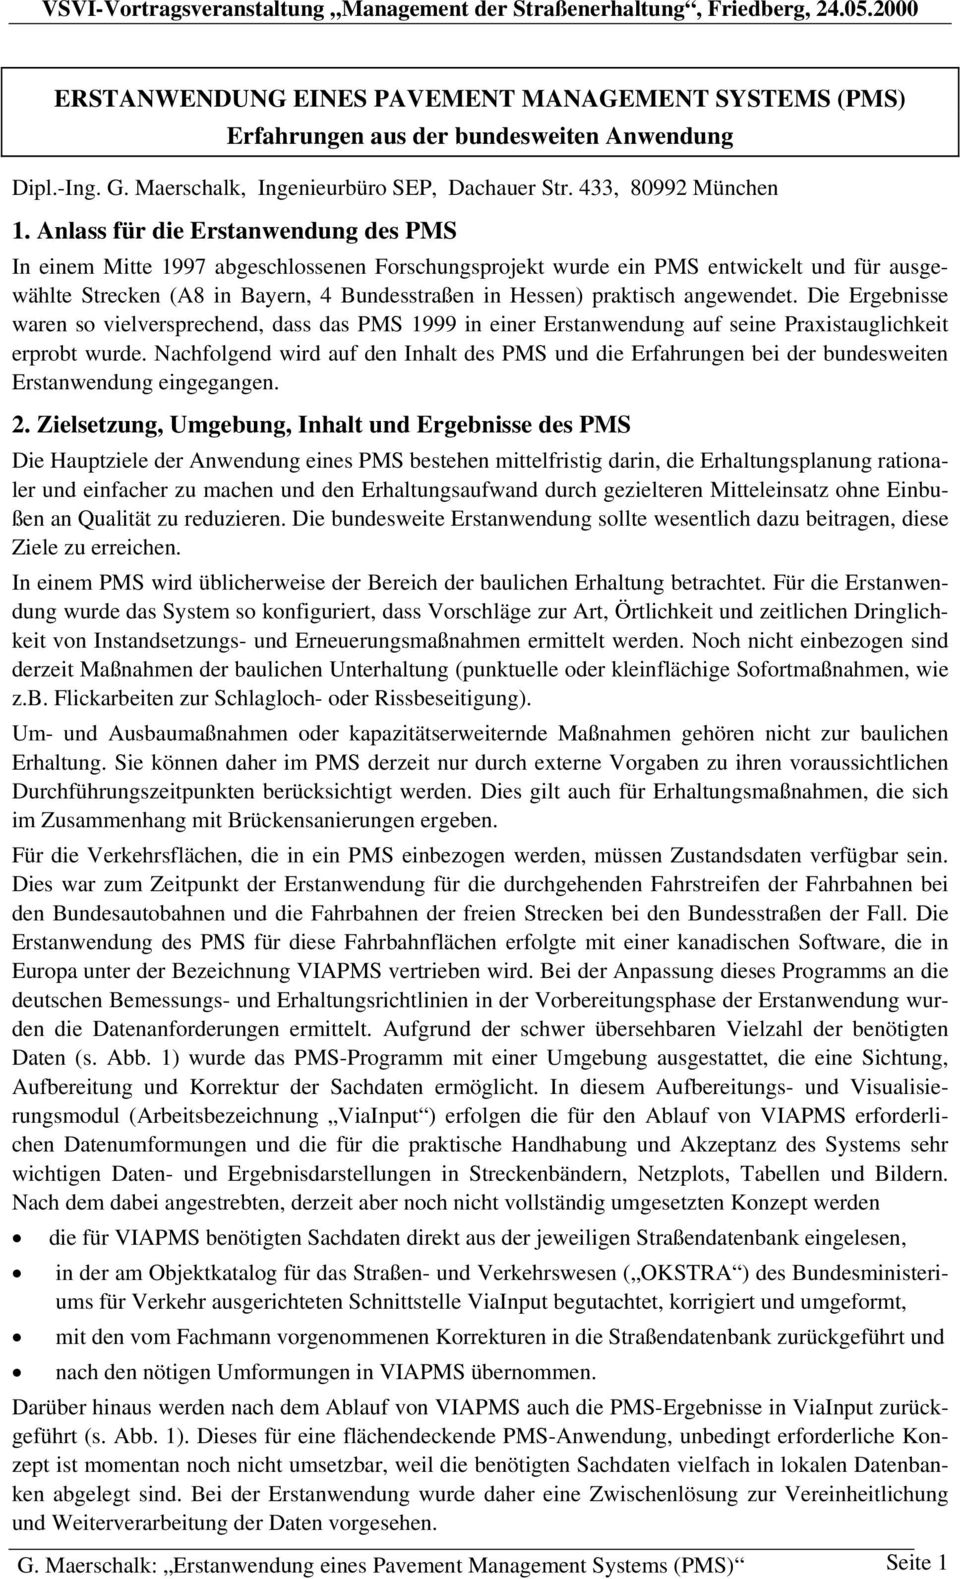 Anlass für die Erstanwendung des PMS In einem Mitte 1997 abgeschlossenen Forschungsprojekt wurde ein PMS entwickelt und für ausgewählte Strecken (A8 in Bayern, 4 Bundesstraßen in Hessen) praktisch